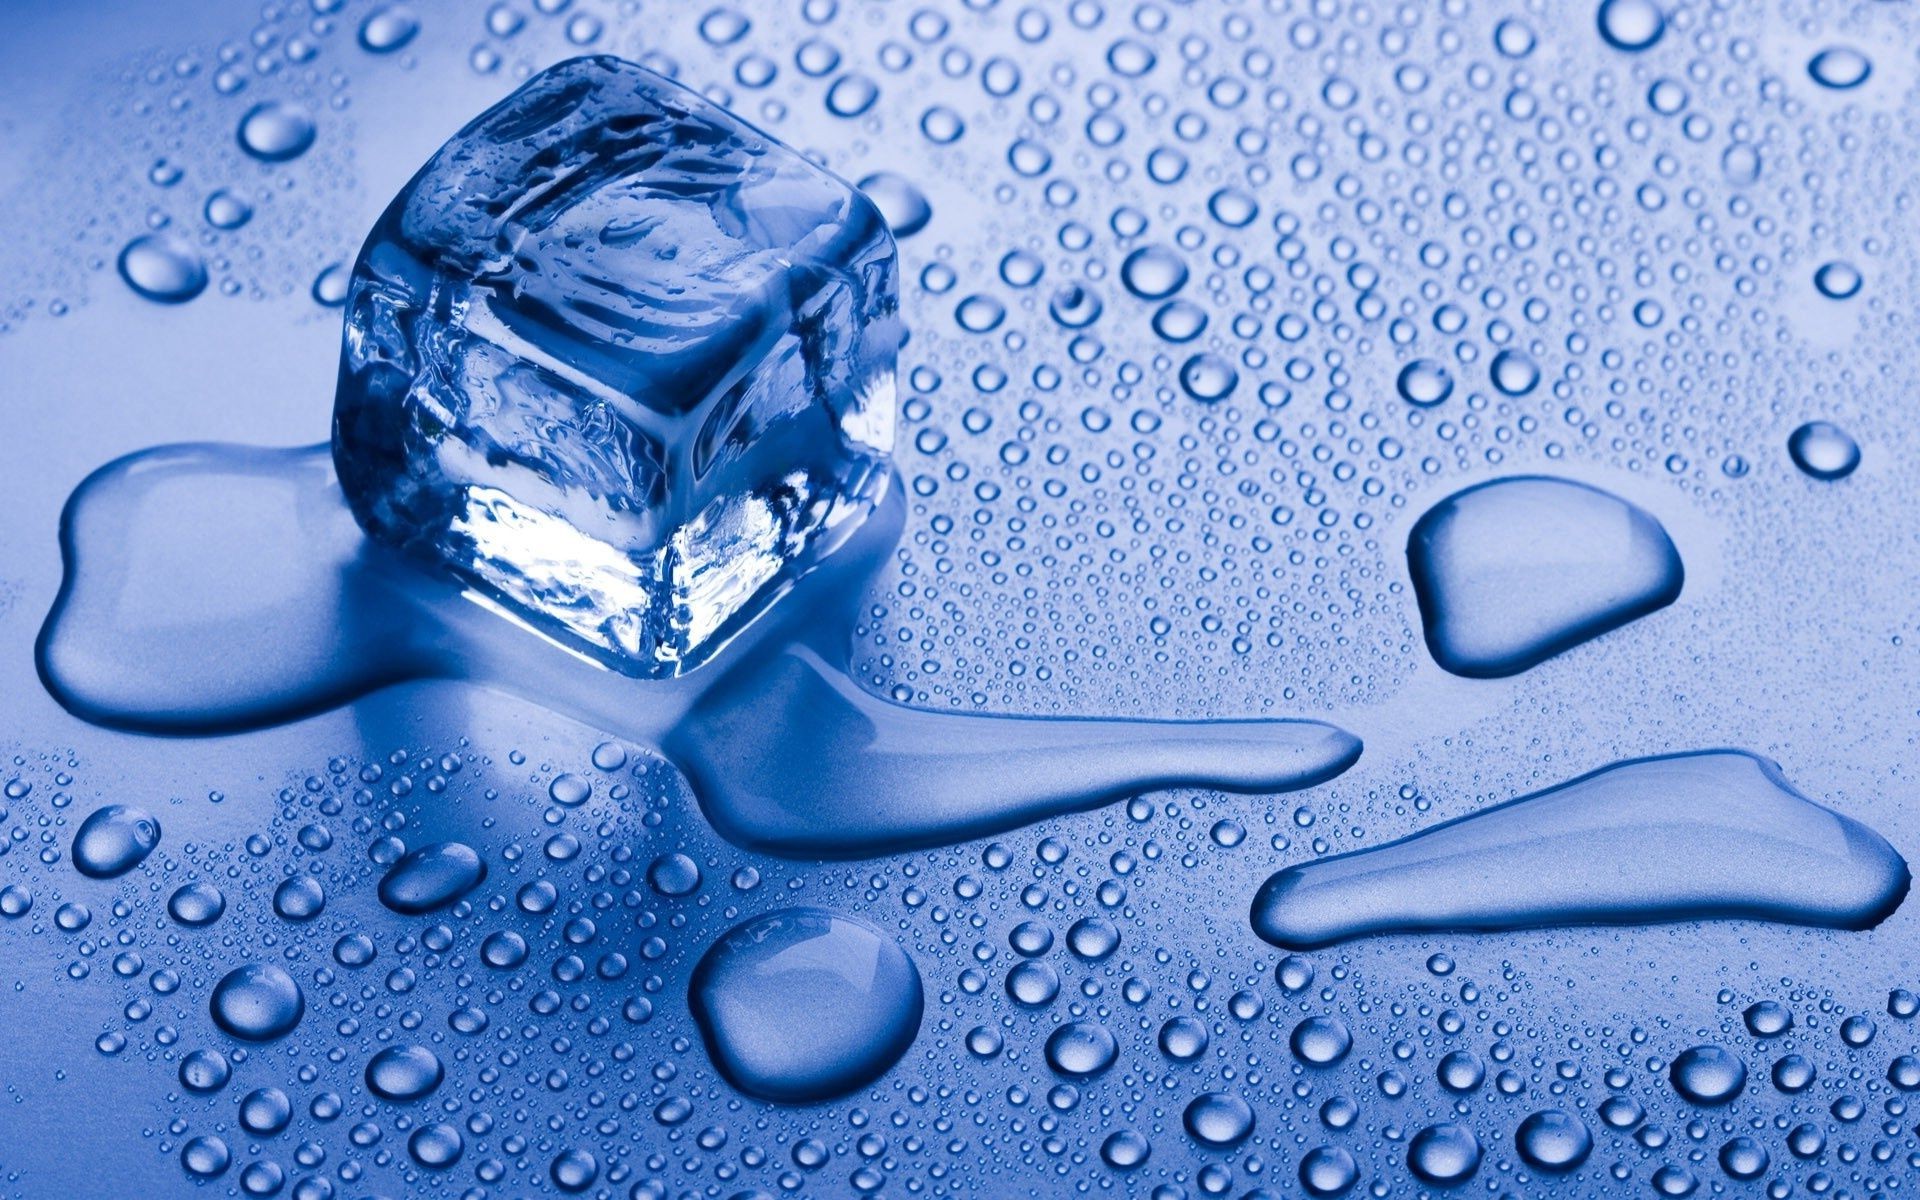 геометрические фигуры мокрый падение жидкость дождь пузырь чистые воды капли всплеск бирюза понятно чистота пить росы мыть пульсация чисто стекло холодная ванна